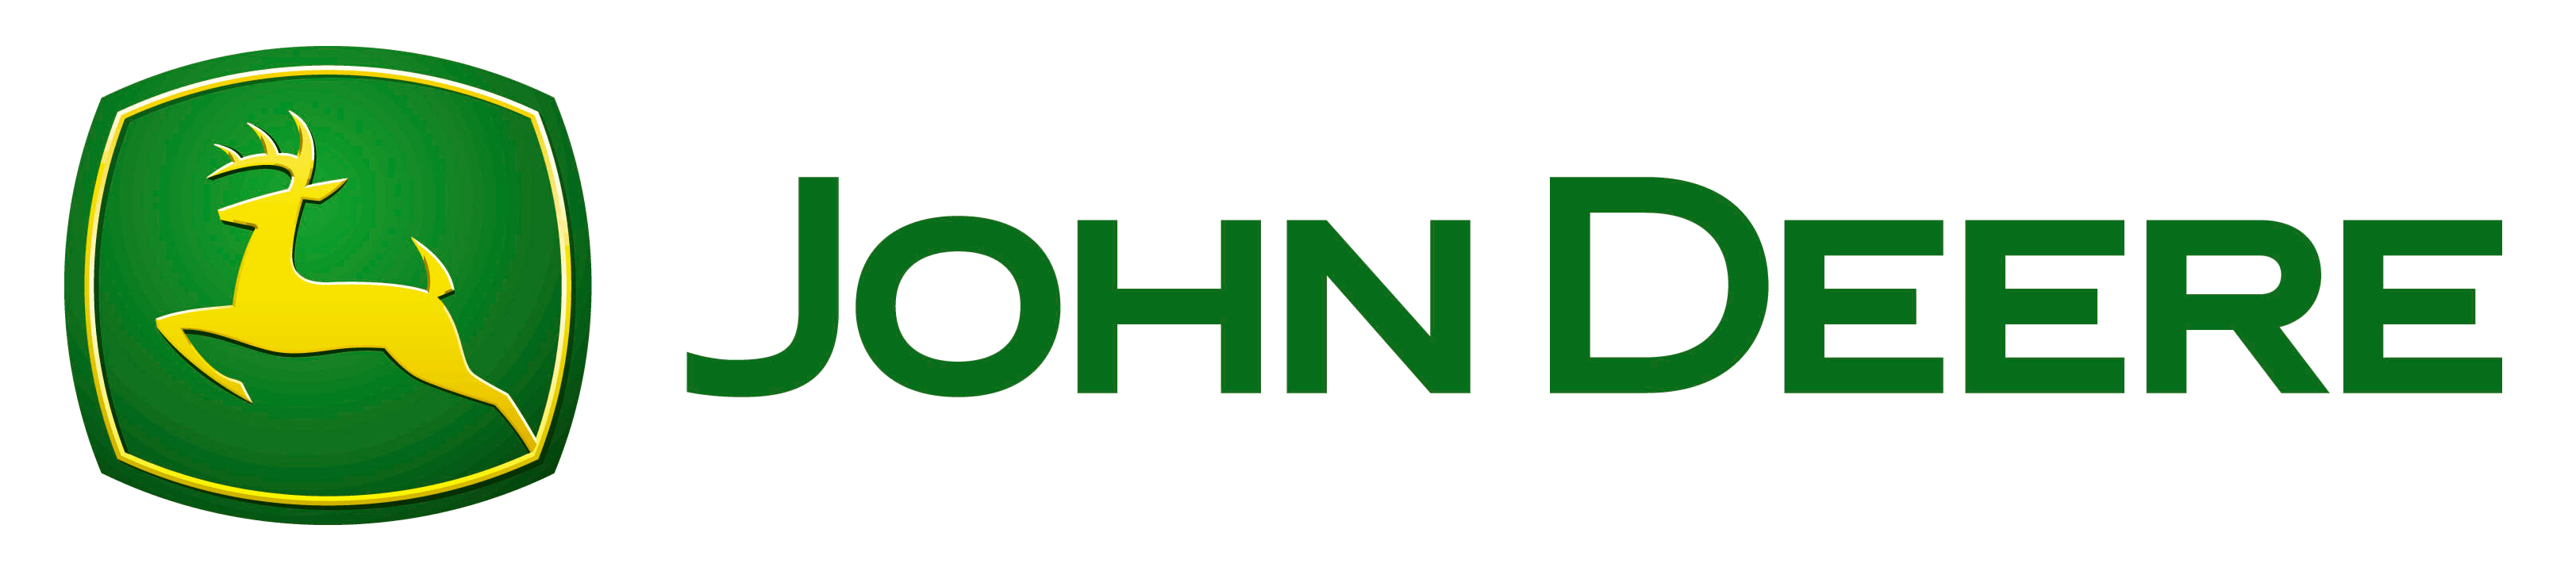 2018 John Deere Logo - John Deere Logo PNG Transparent | PNG Transparent best stock photos